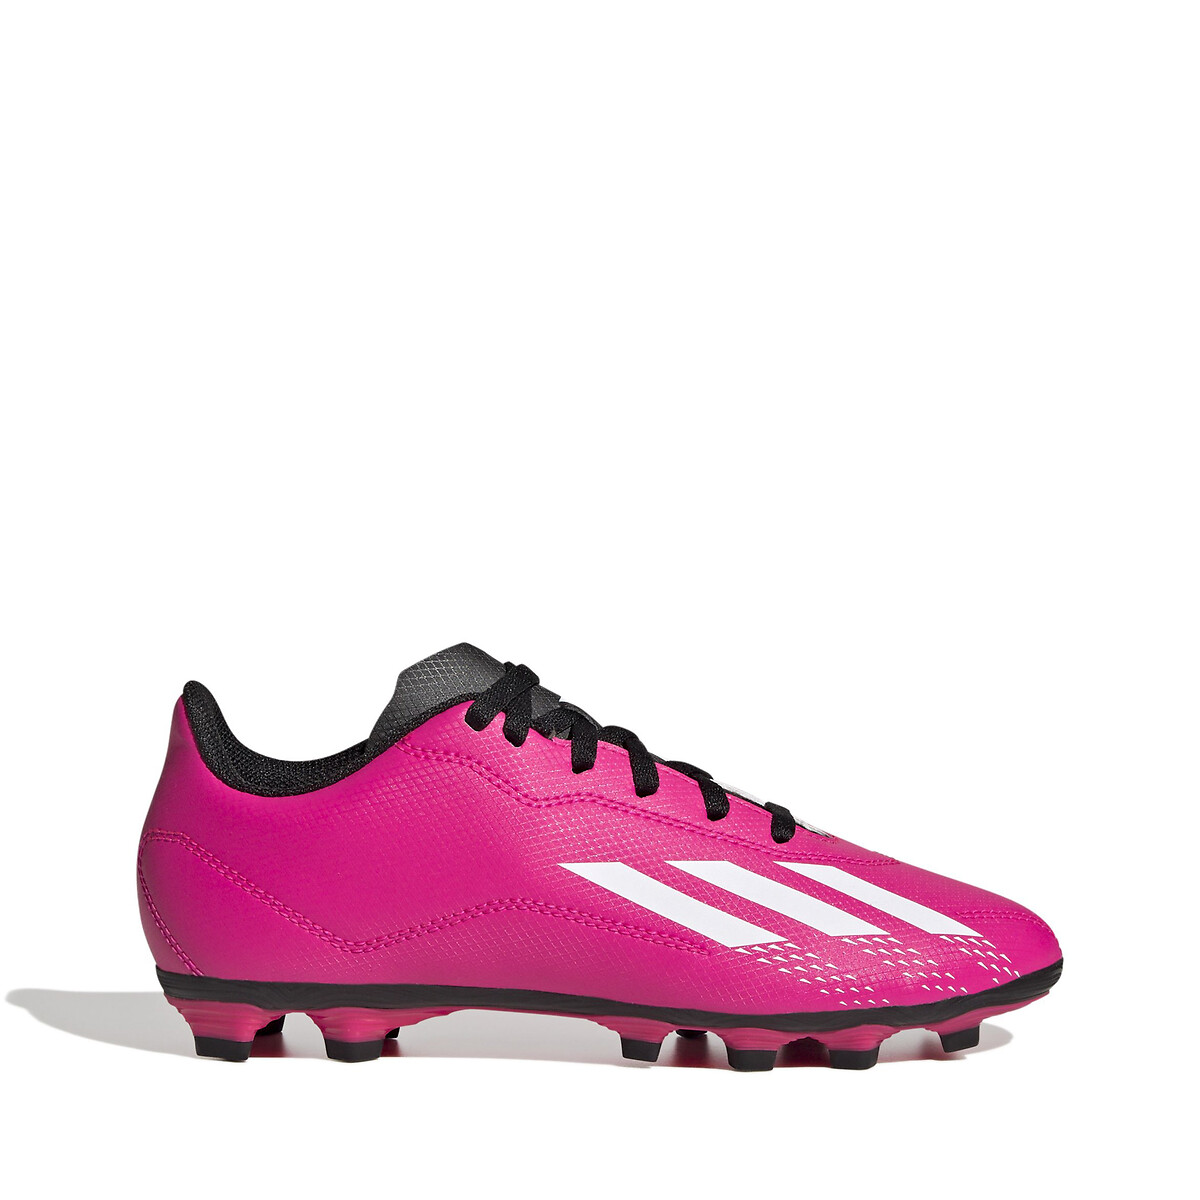 Panter vermogen Verduisteren Kids x speedportal football boots, pink, Adidas Performance | La Redoute